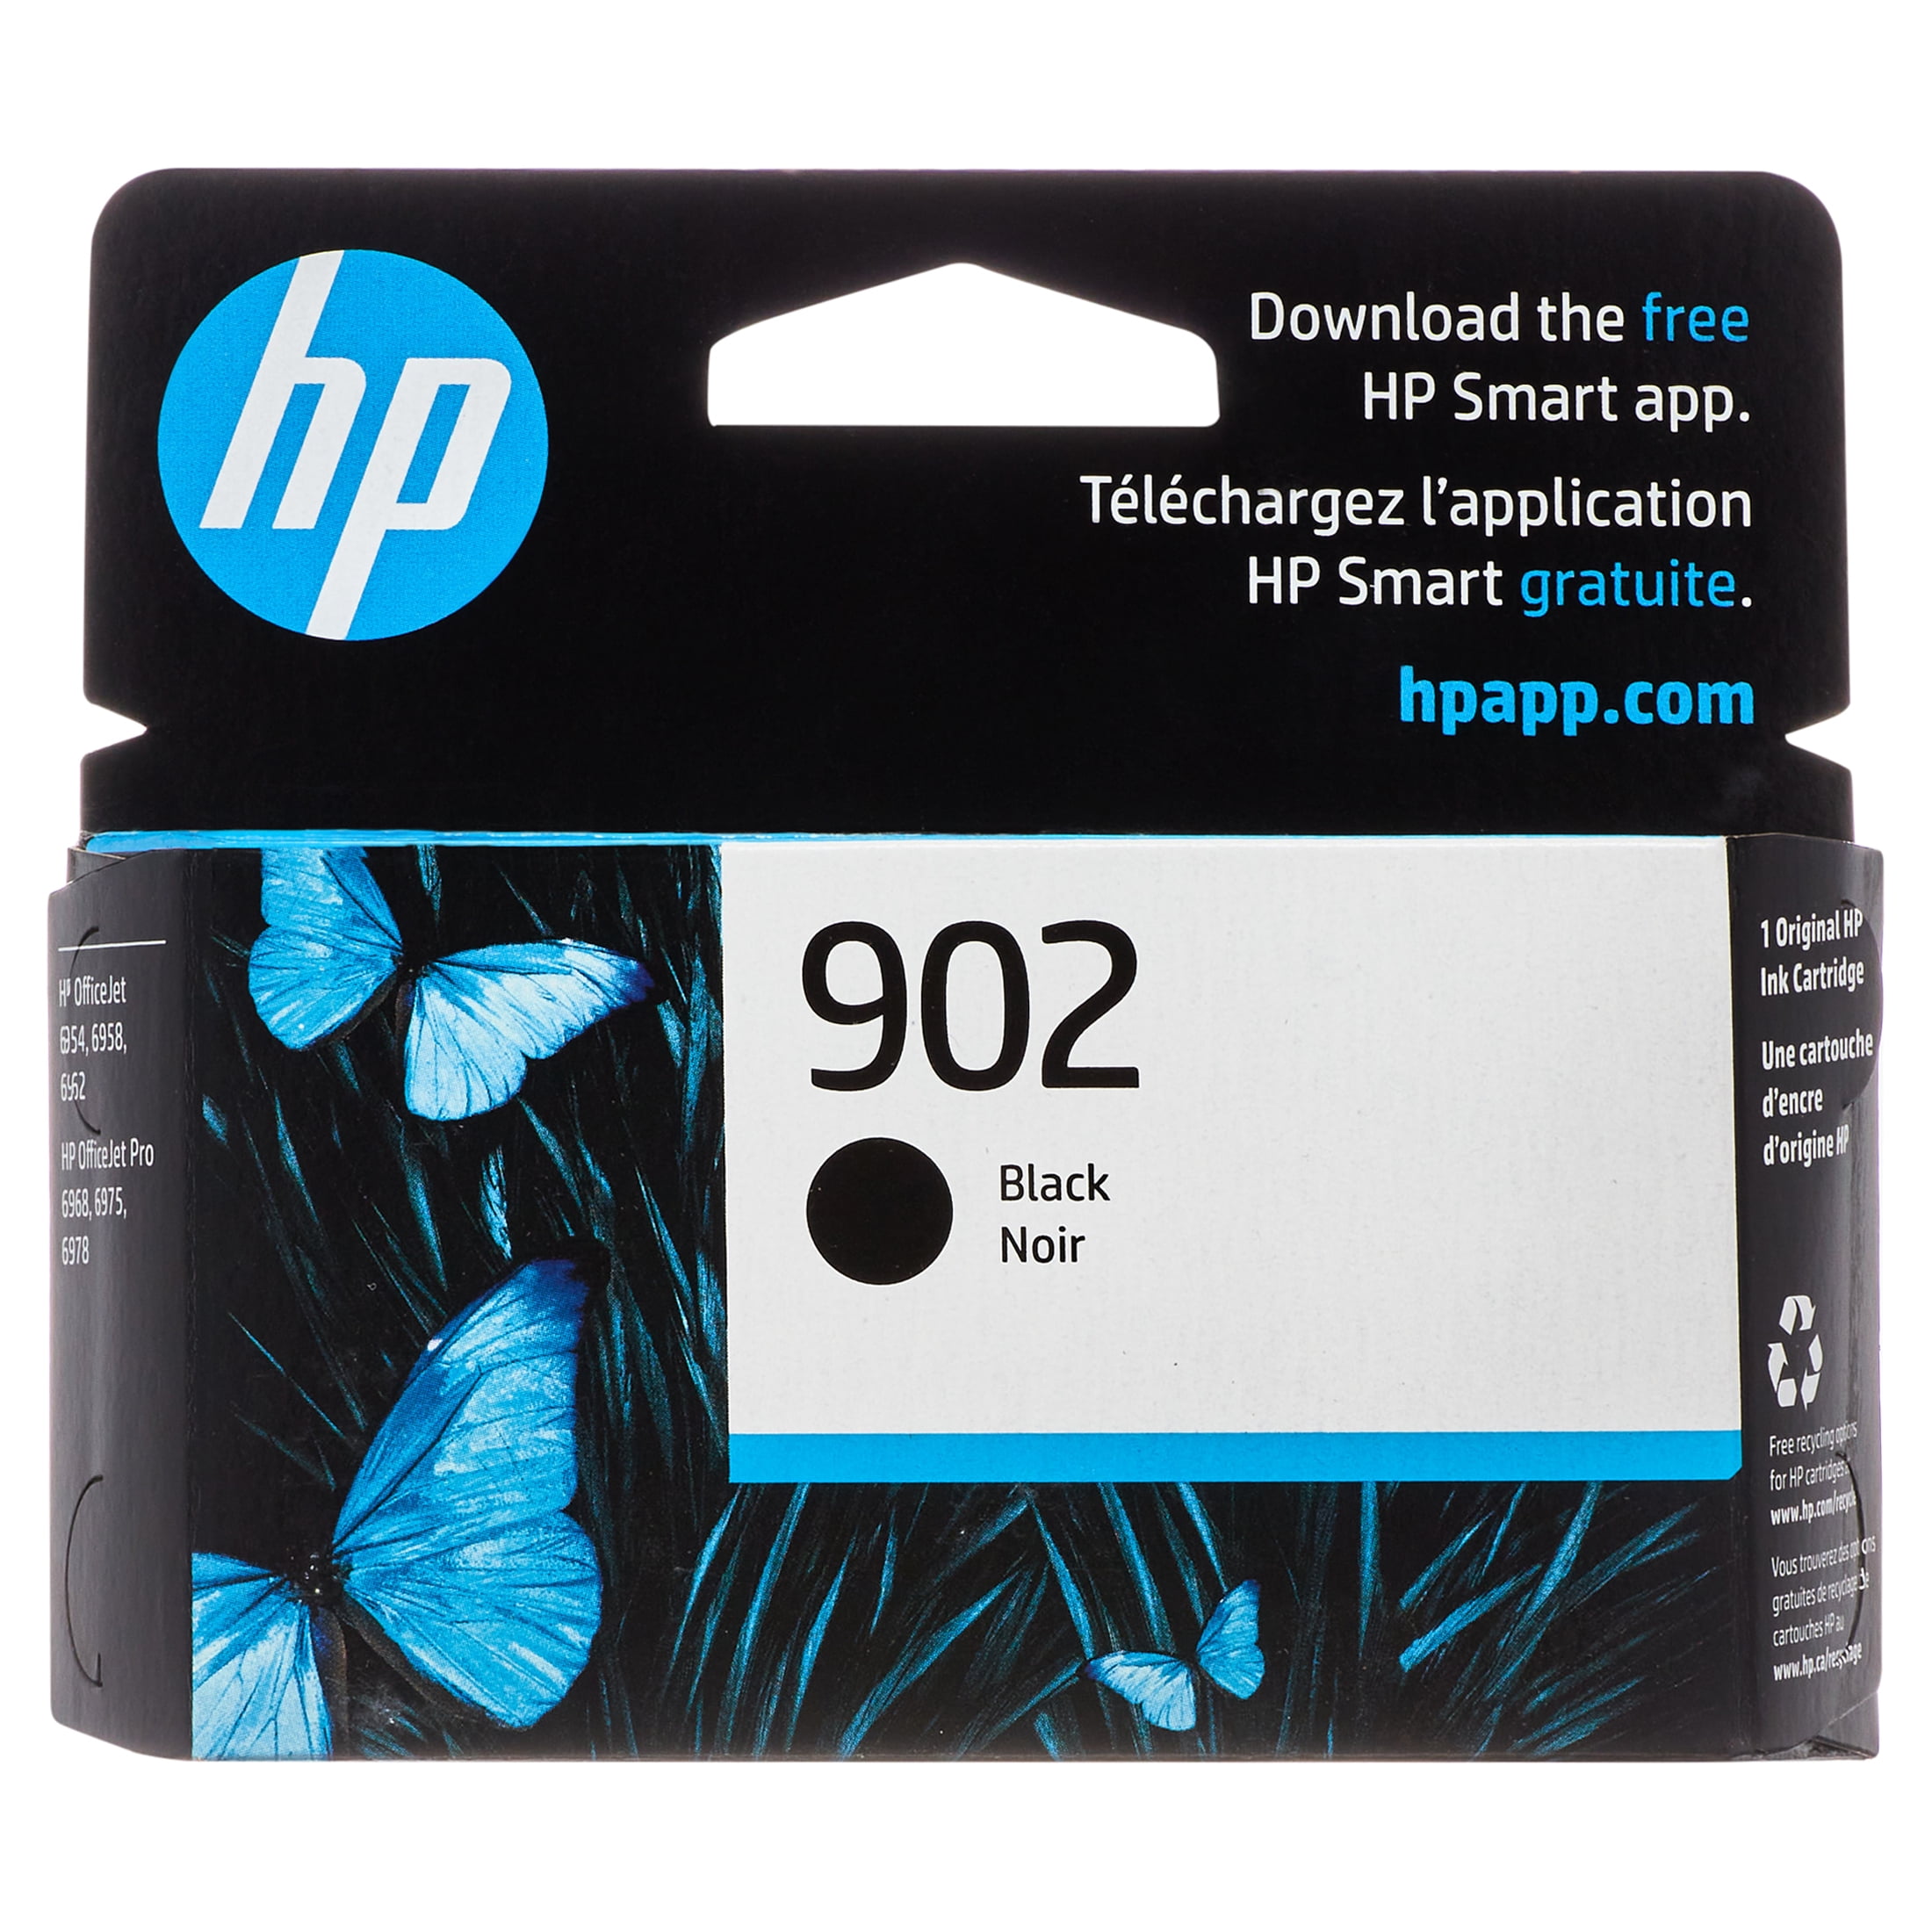 COMETE - 302 - 1 Cartouche d'Encre Compatible pour HP 302 - Noir